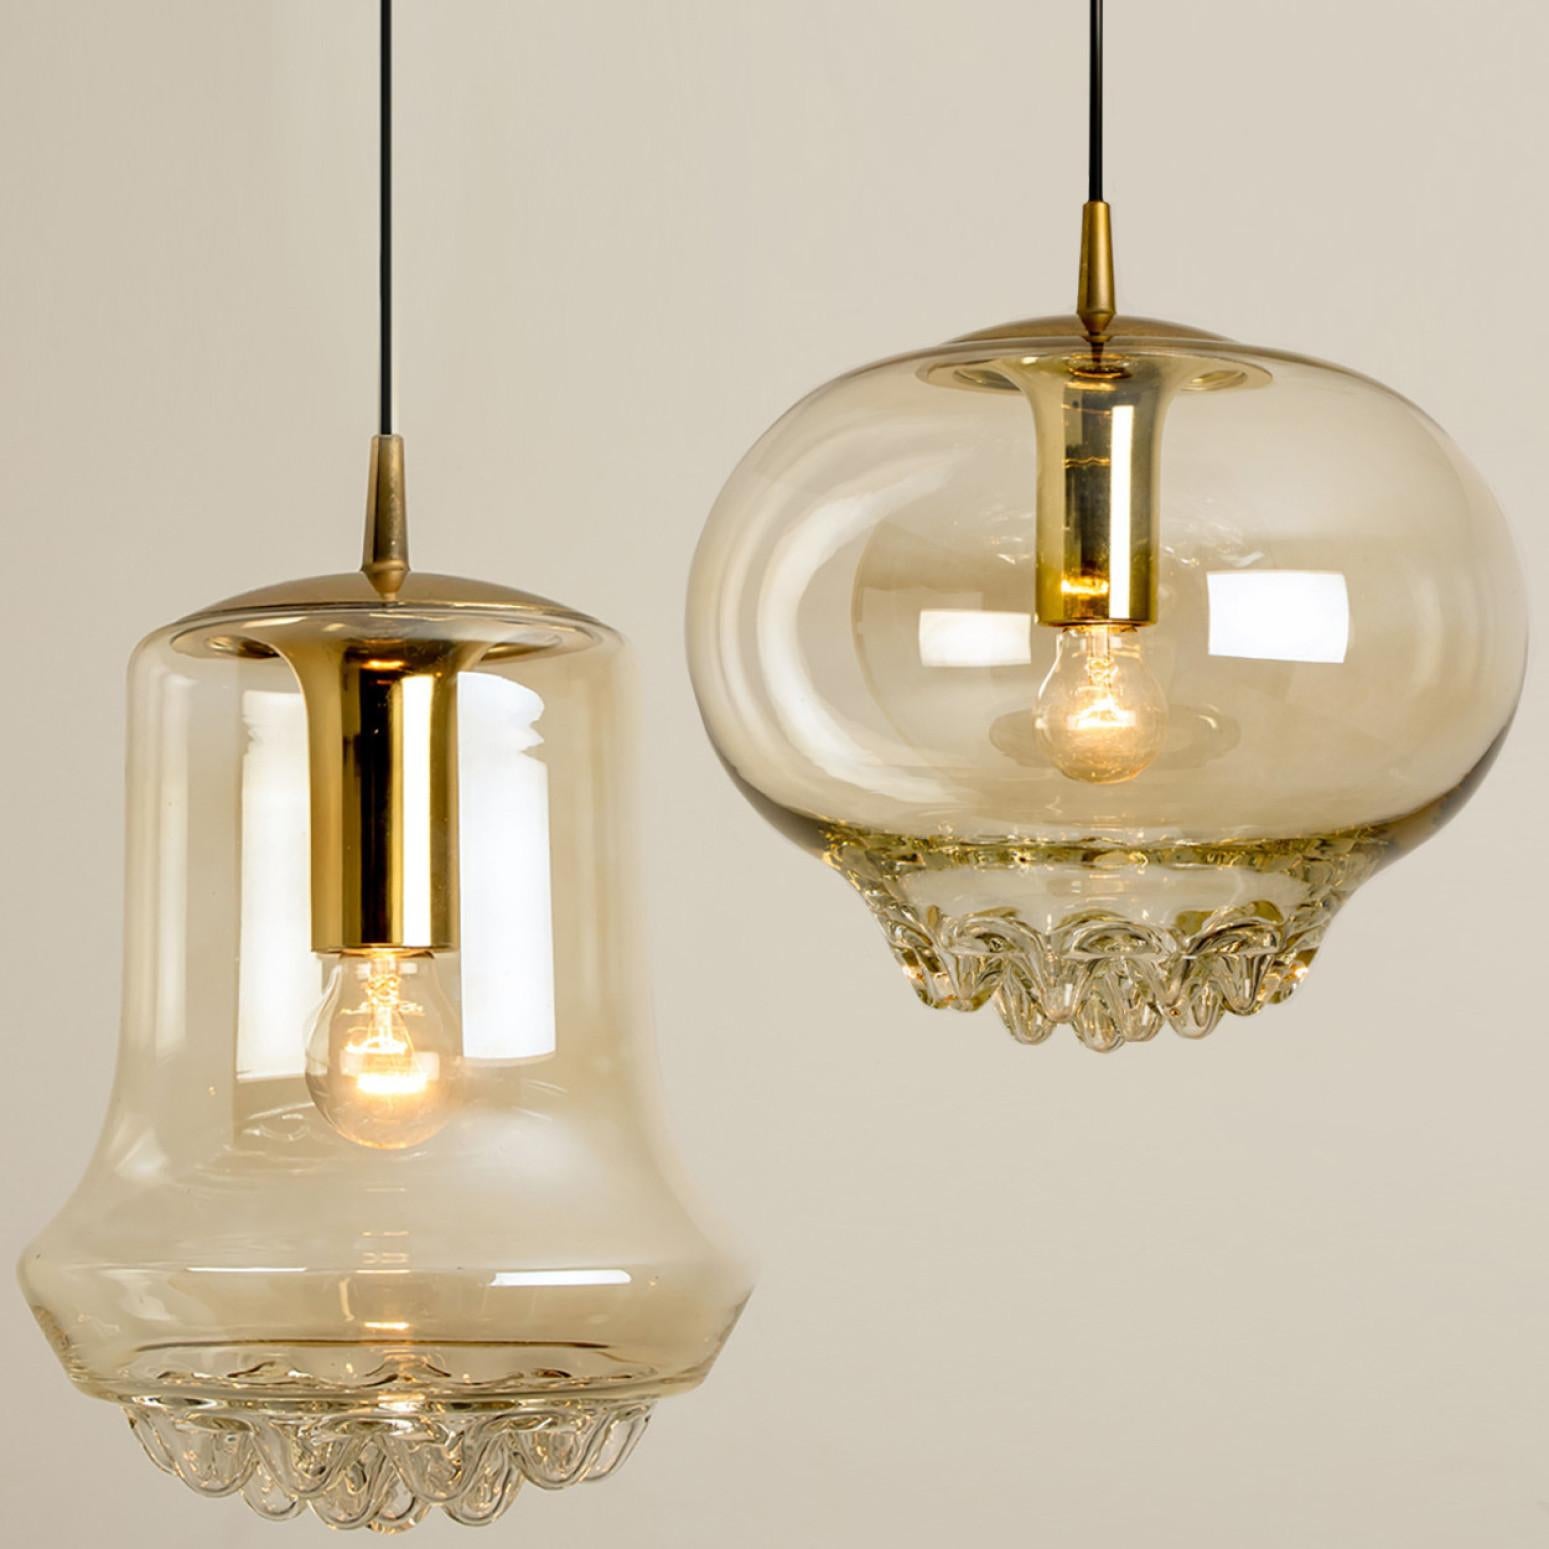 Ensemble de deux lampes suspendues fumées, dorées et brunes, années 1960, Peill et Putzler, Allemagne, Europe. Une forme unique et un merveilleux effet de lumière grâce à de jolis éléments en verre. Pièces de haute qualité. Illumine la beauté.